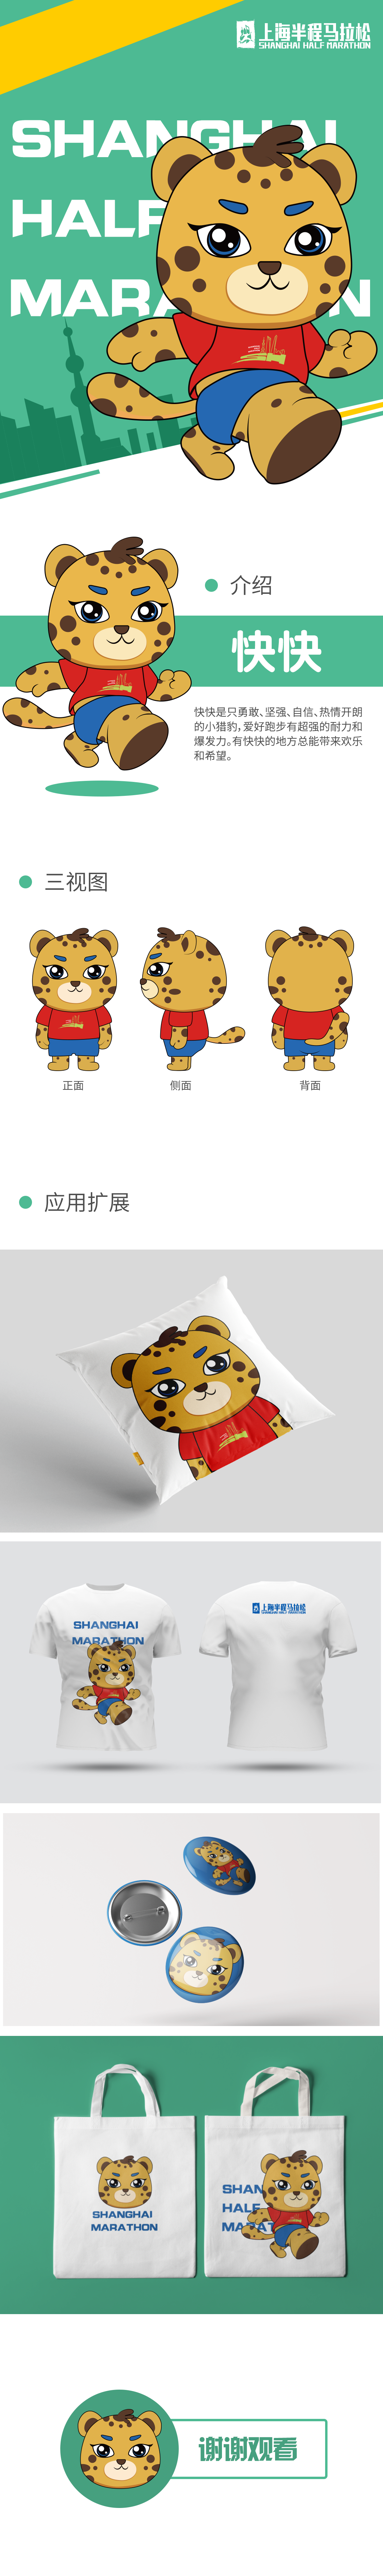 上海半程马拉松吉祥物设计图0